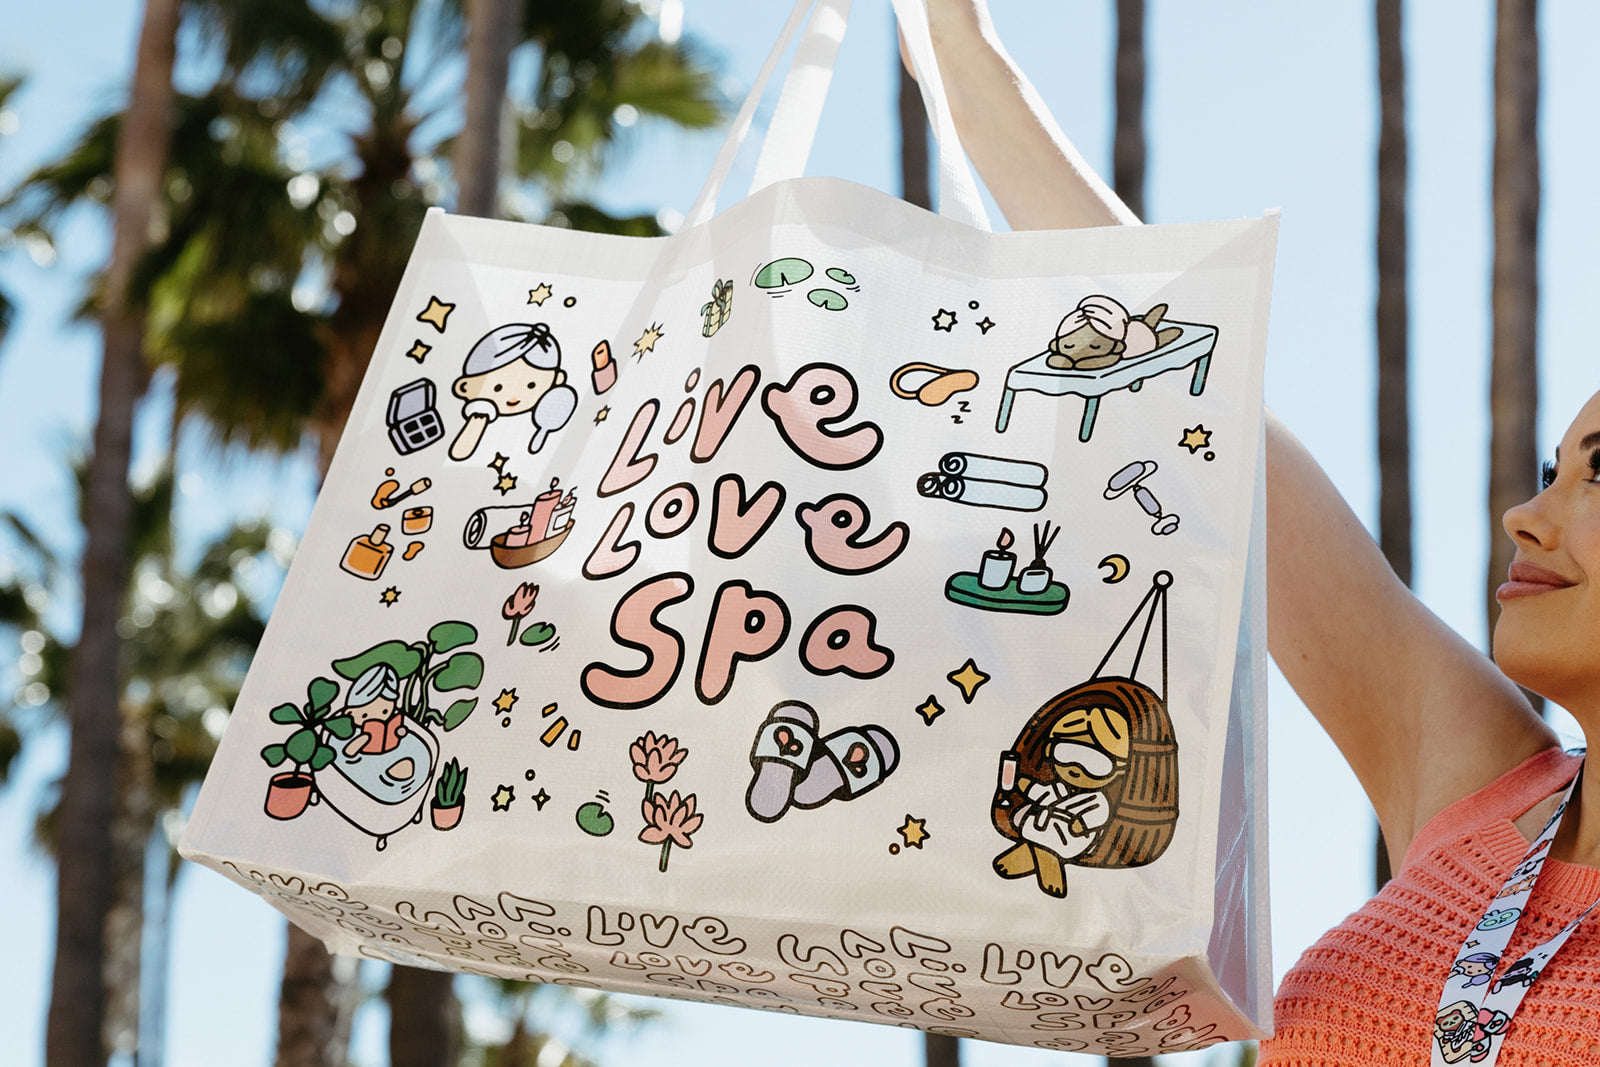 Shop  Live love bags